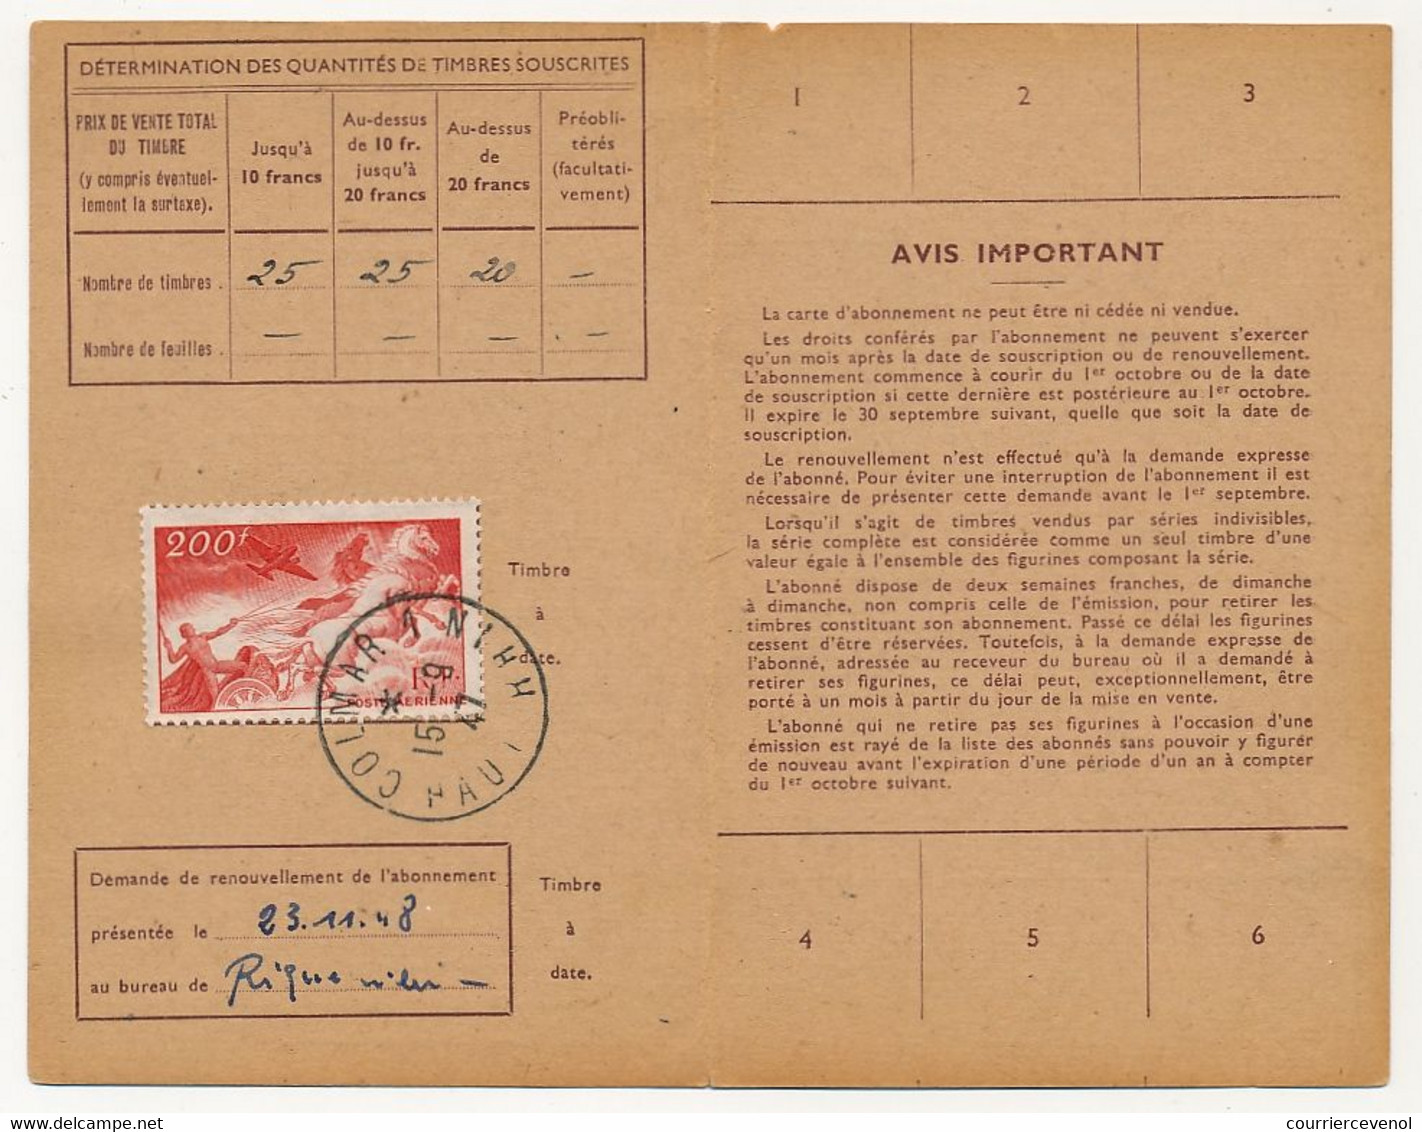 Carte D'abonnement Aux Timbres-poste Spéciaux Français, Affr 200F P.A Char - Obl Colmar R.P 15/9/1947 - 1927-1959 Lettres & Documents